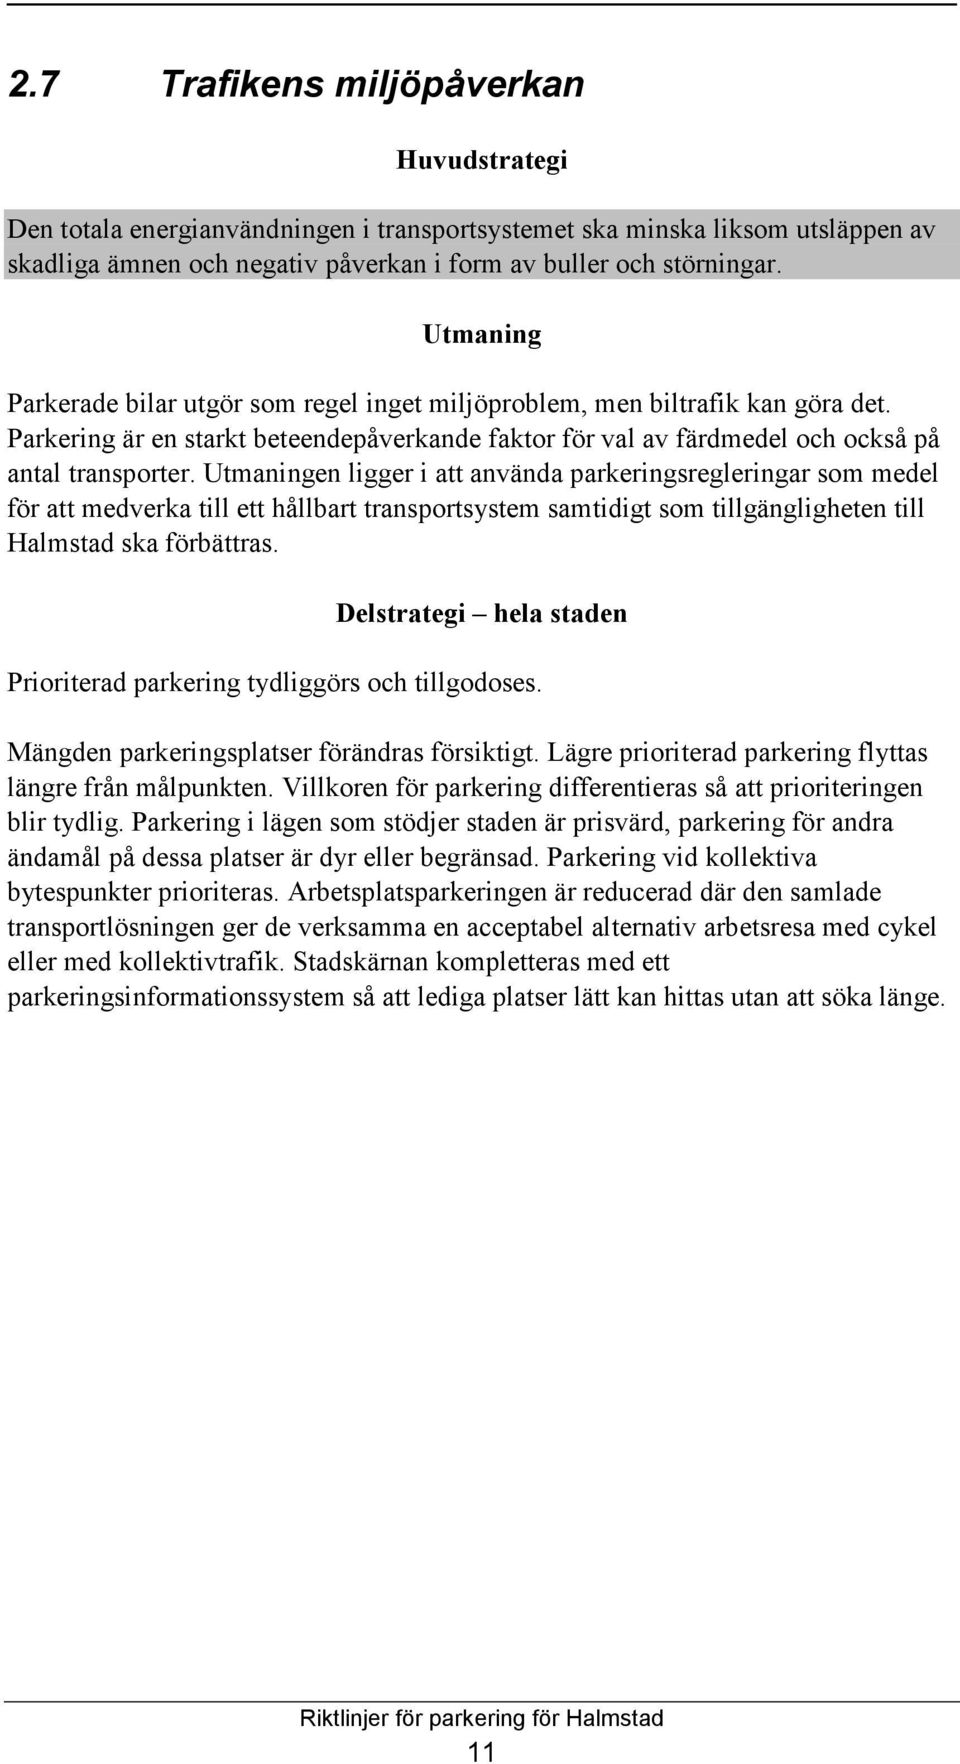 Riktlinjer för parkering i Halmstad - PDF Gratis nedladdning